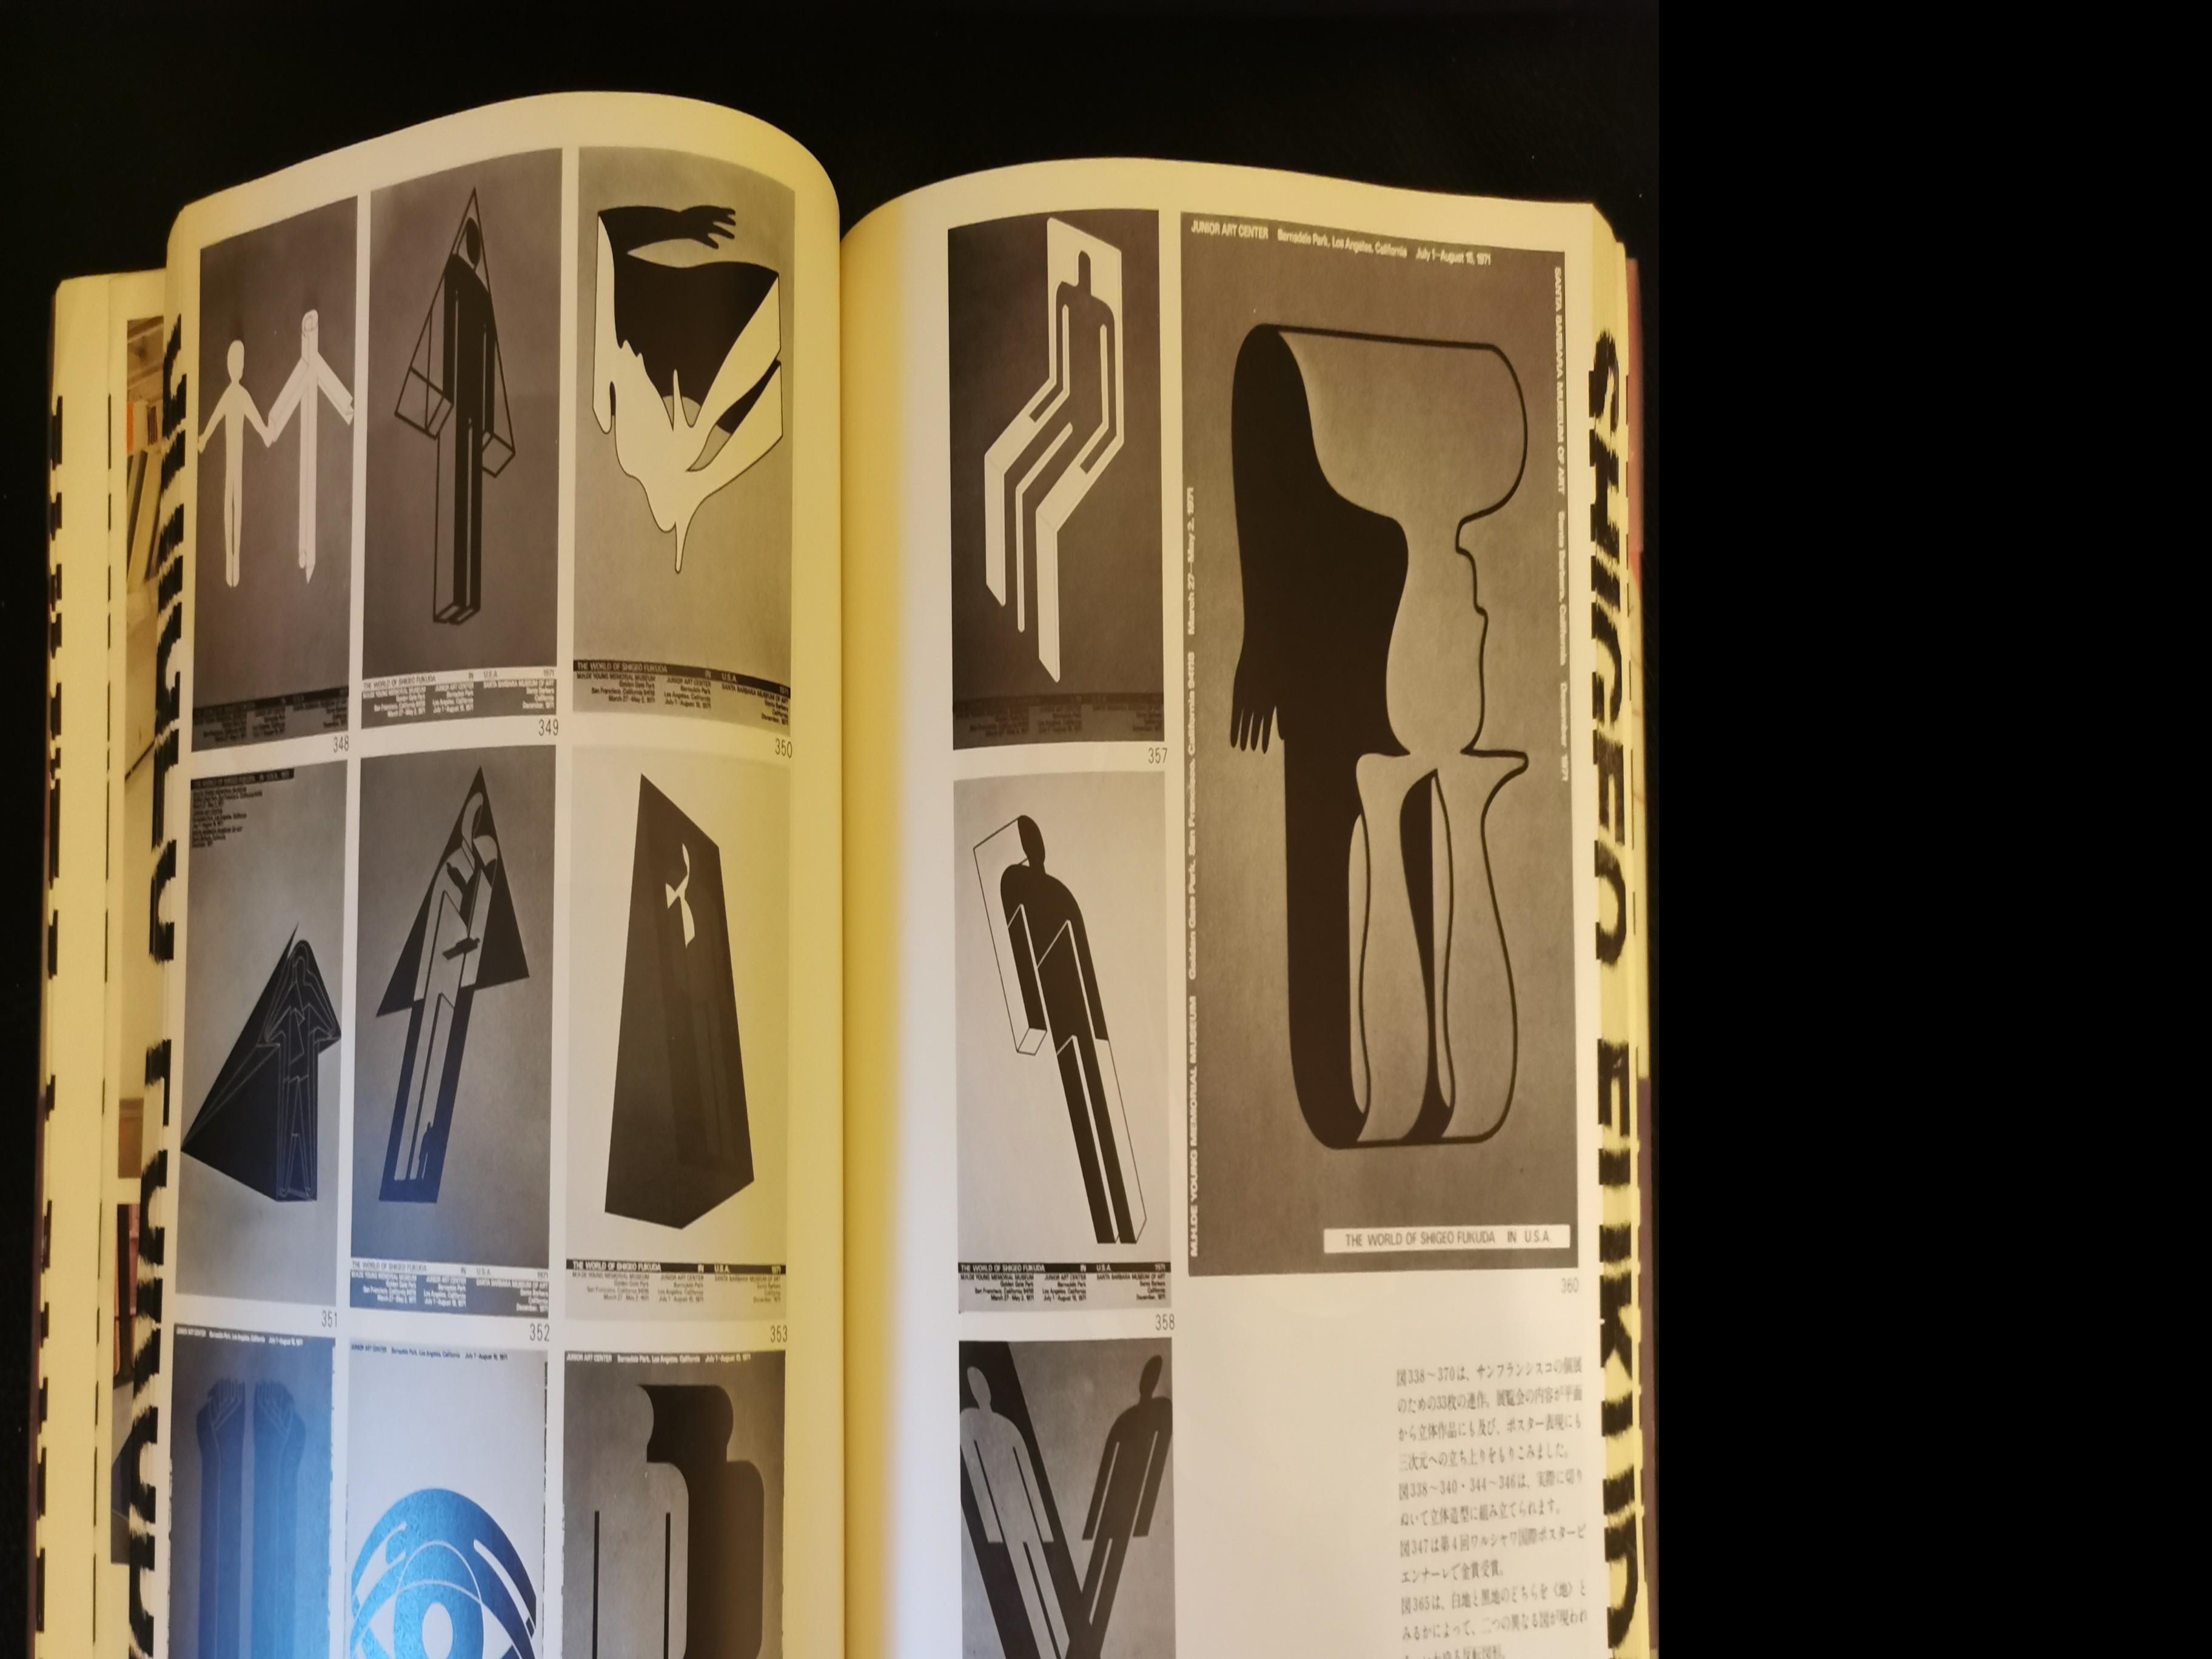 福田繁雄作品集》講談社1979 絕版收藏平面設計日本設計師, 興趣及遊戲 